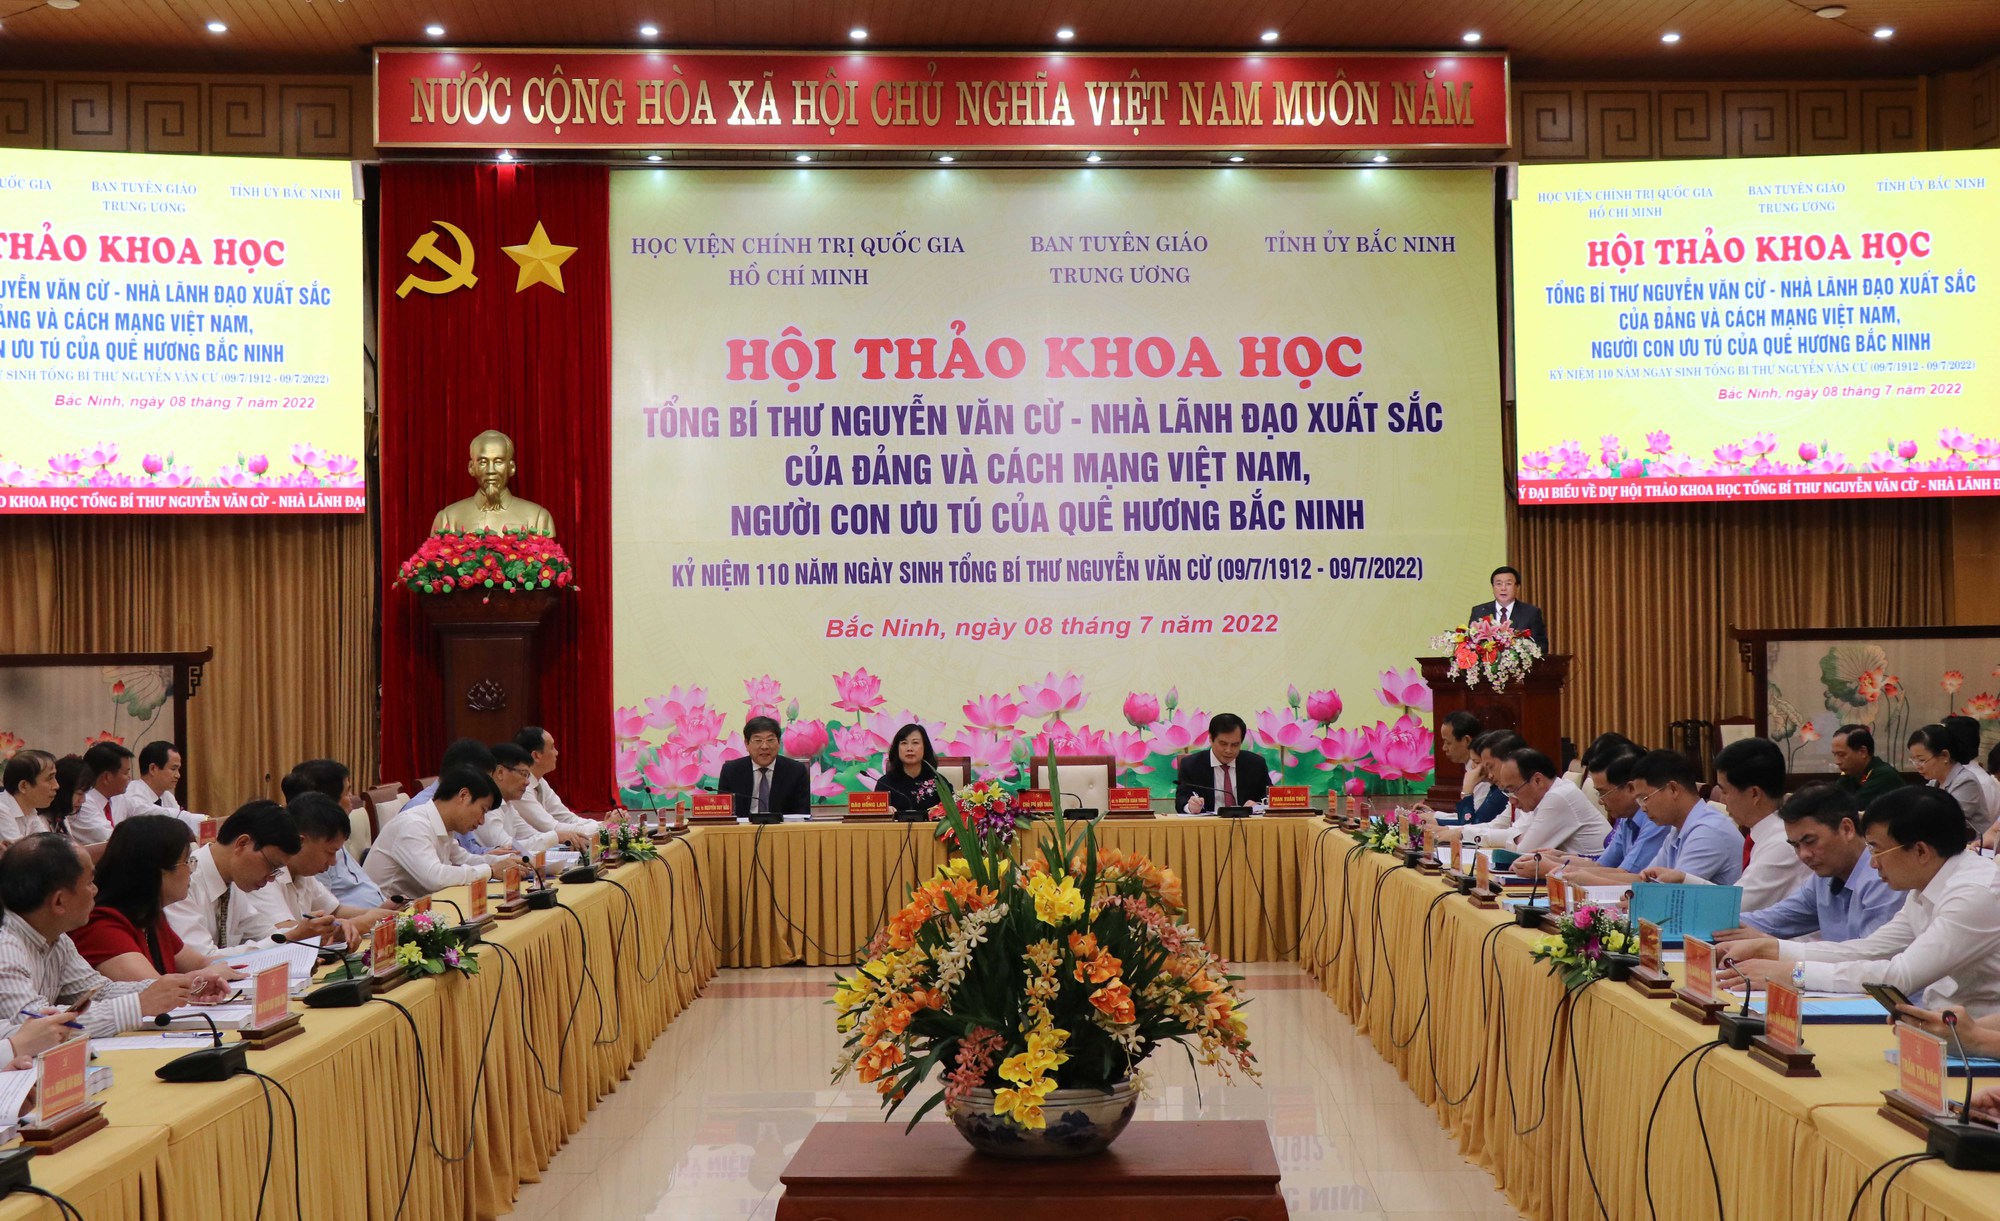 Hội thảo khoa học về cố Tổng Bí thư Nguyễn Văn Cừ - nhà lãnh đạo xuất sắc của Đảng - Ảnh 1.